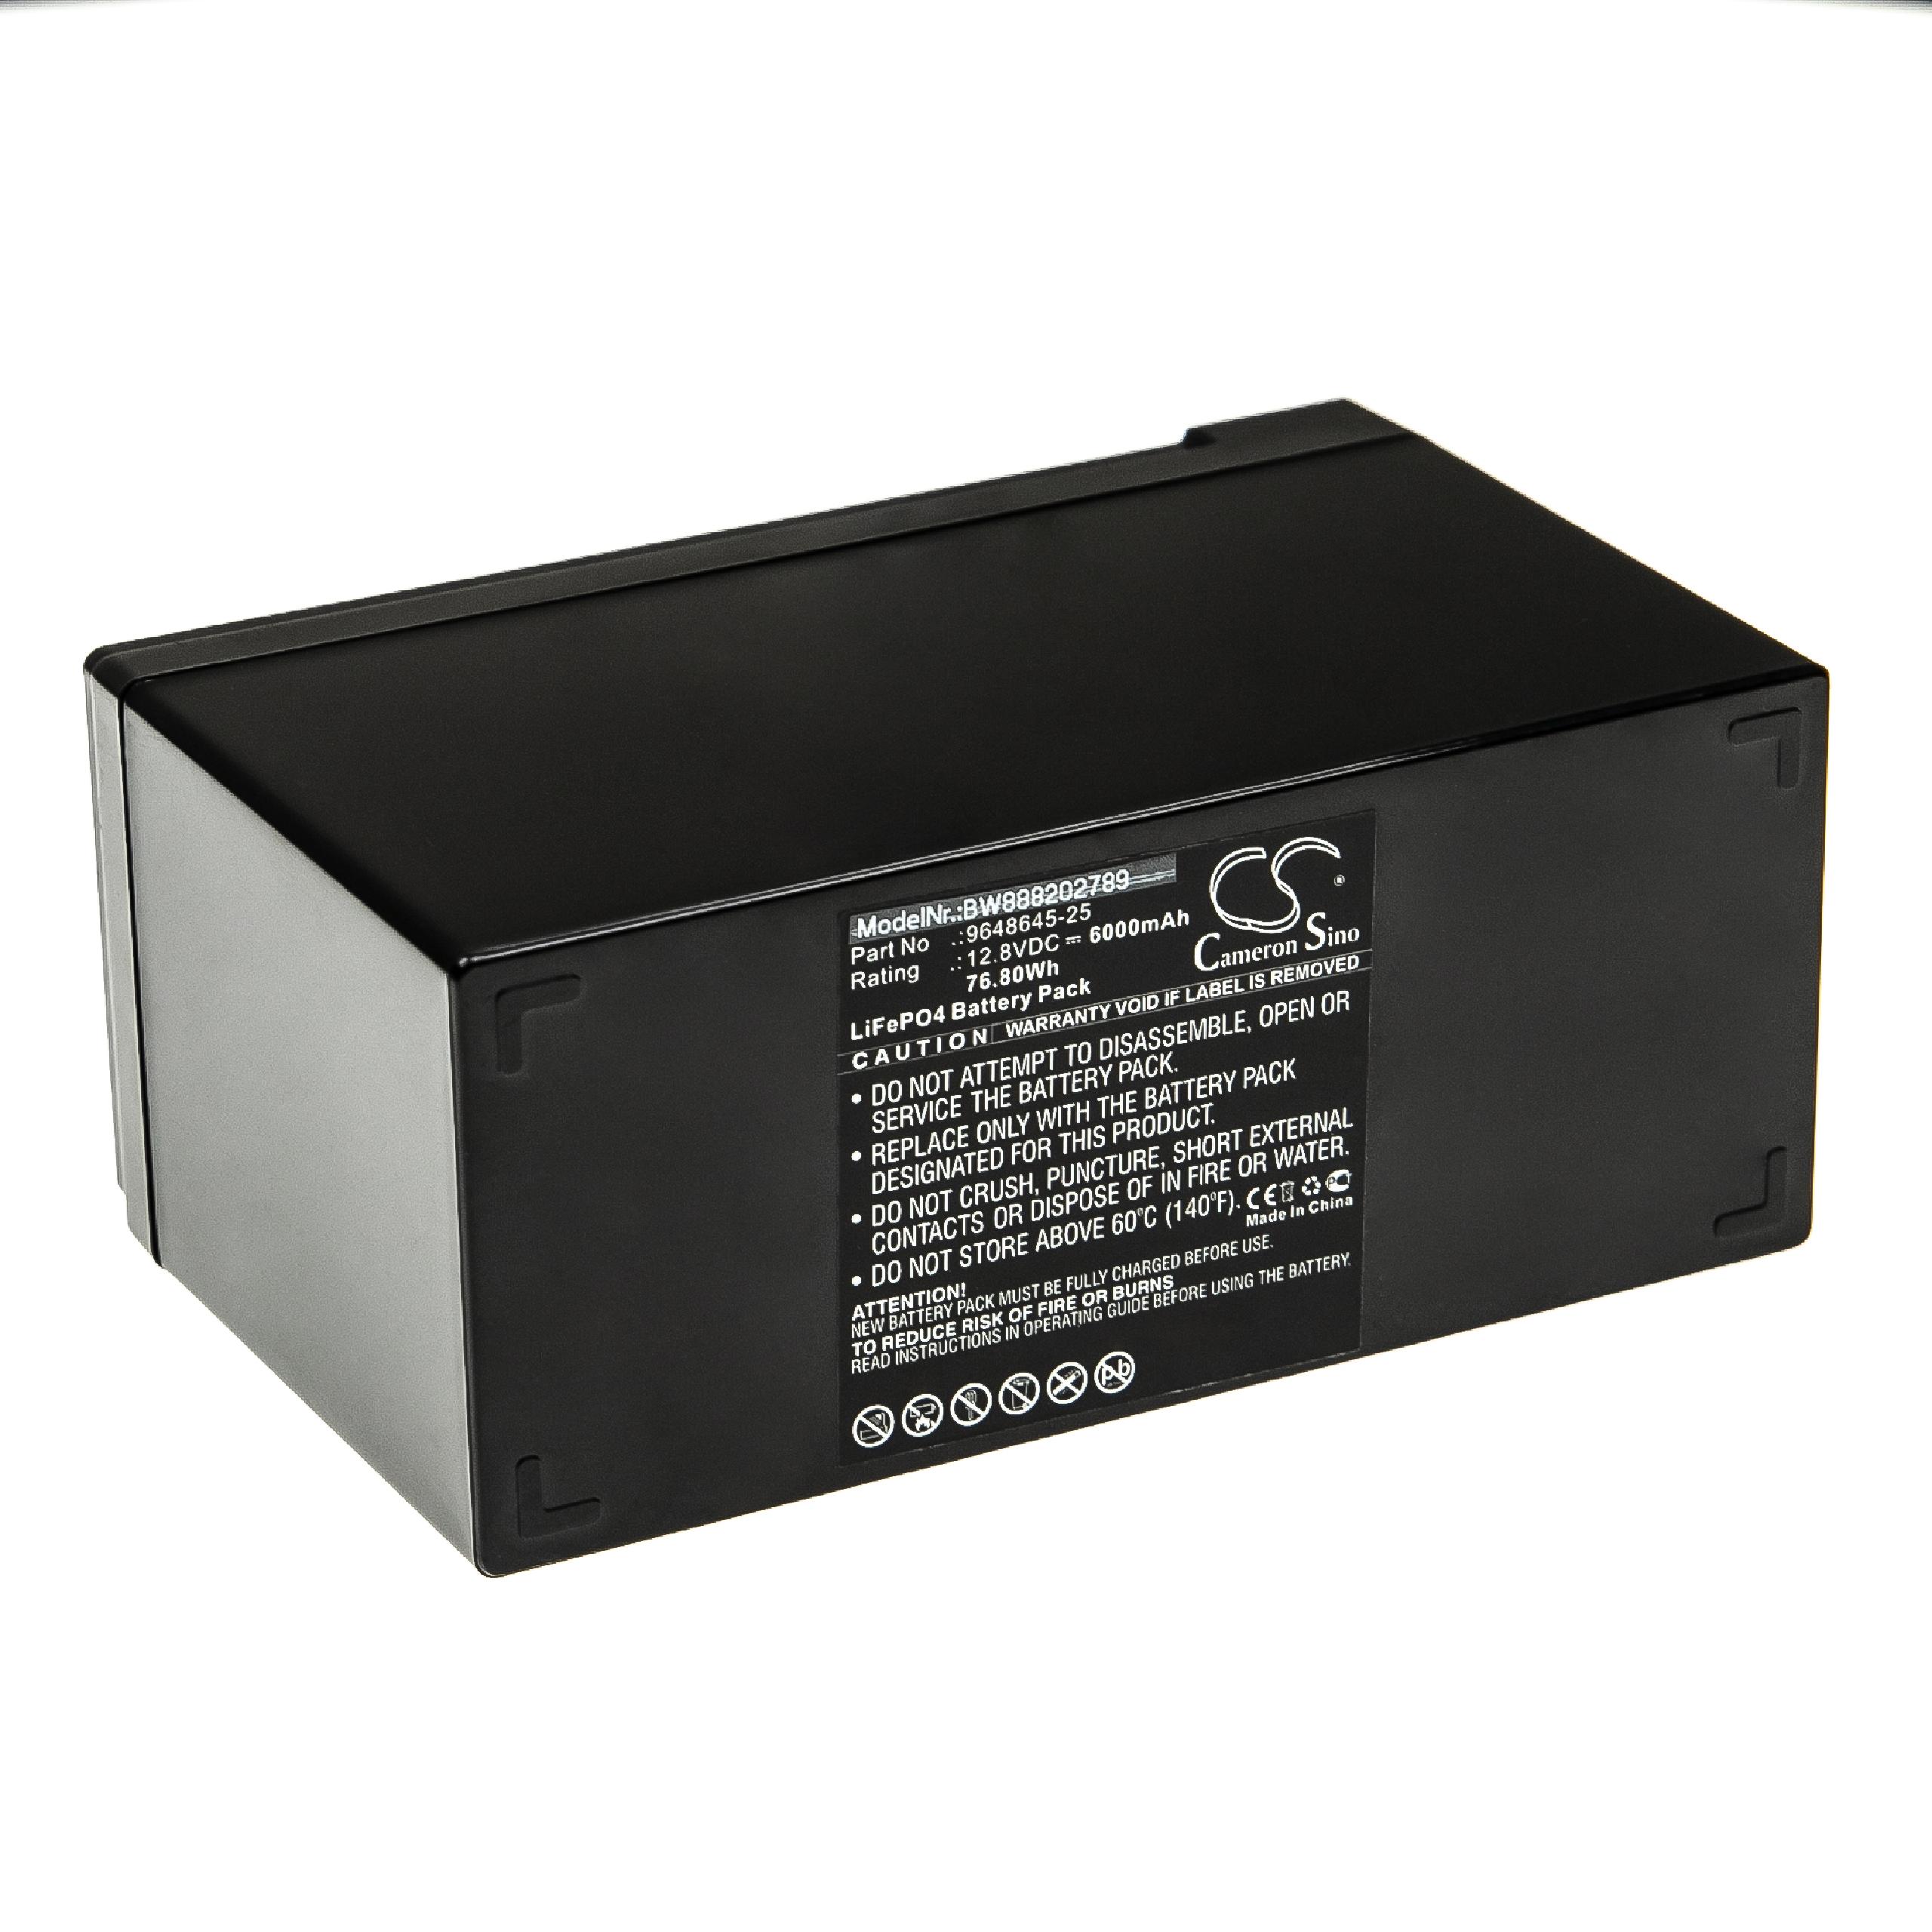 Akumulator do elektronarzędzi zamiennik Flymo 9648645-25 - 6000 mAh, 12,8 V, LiFePO4